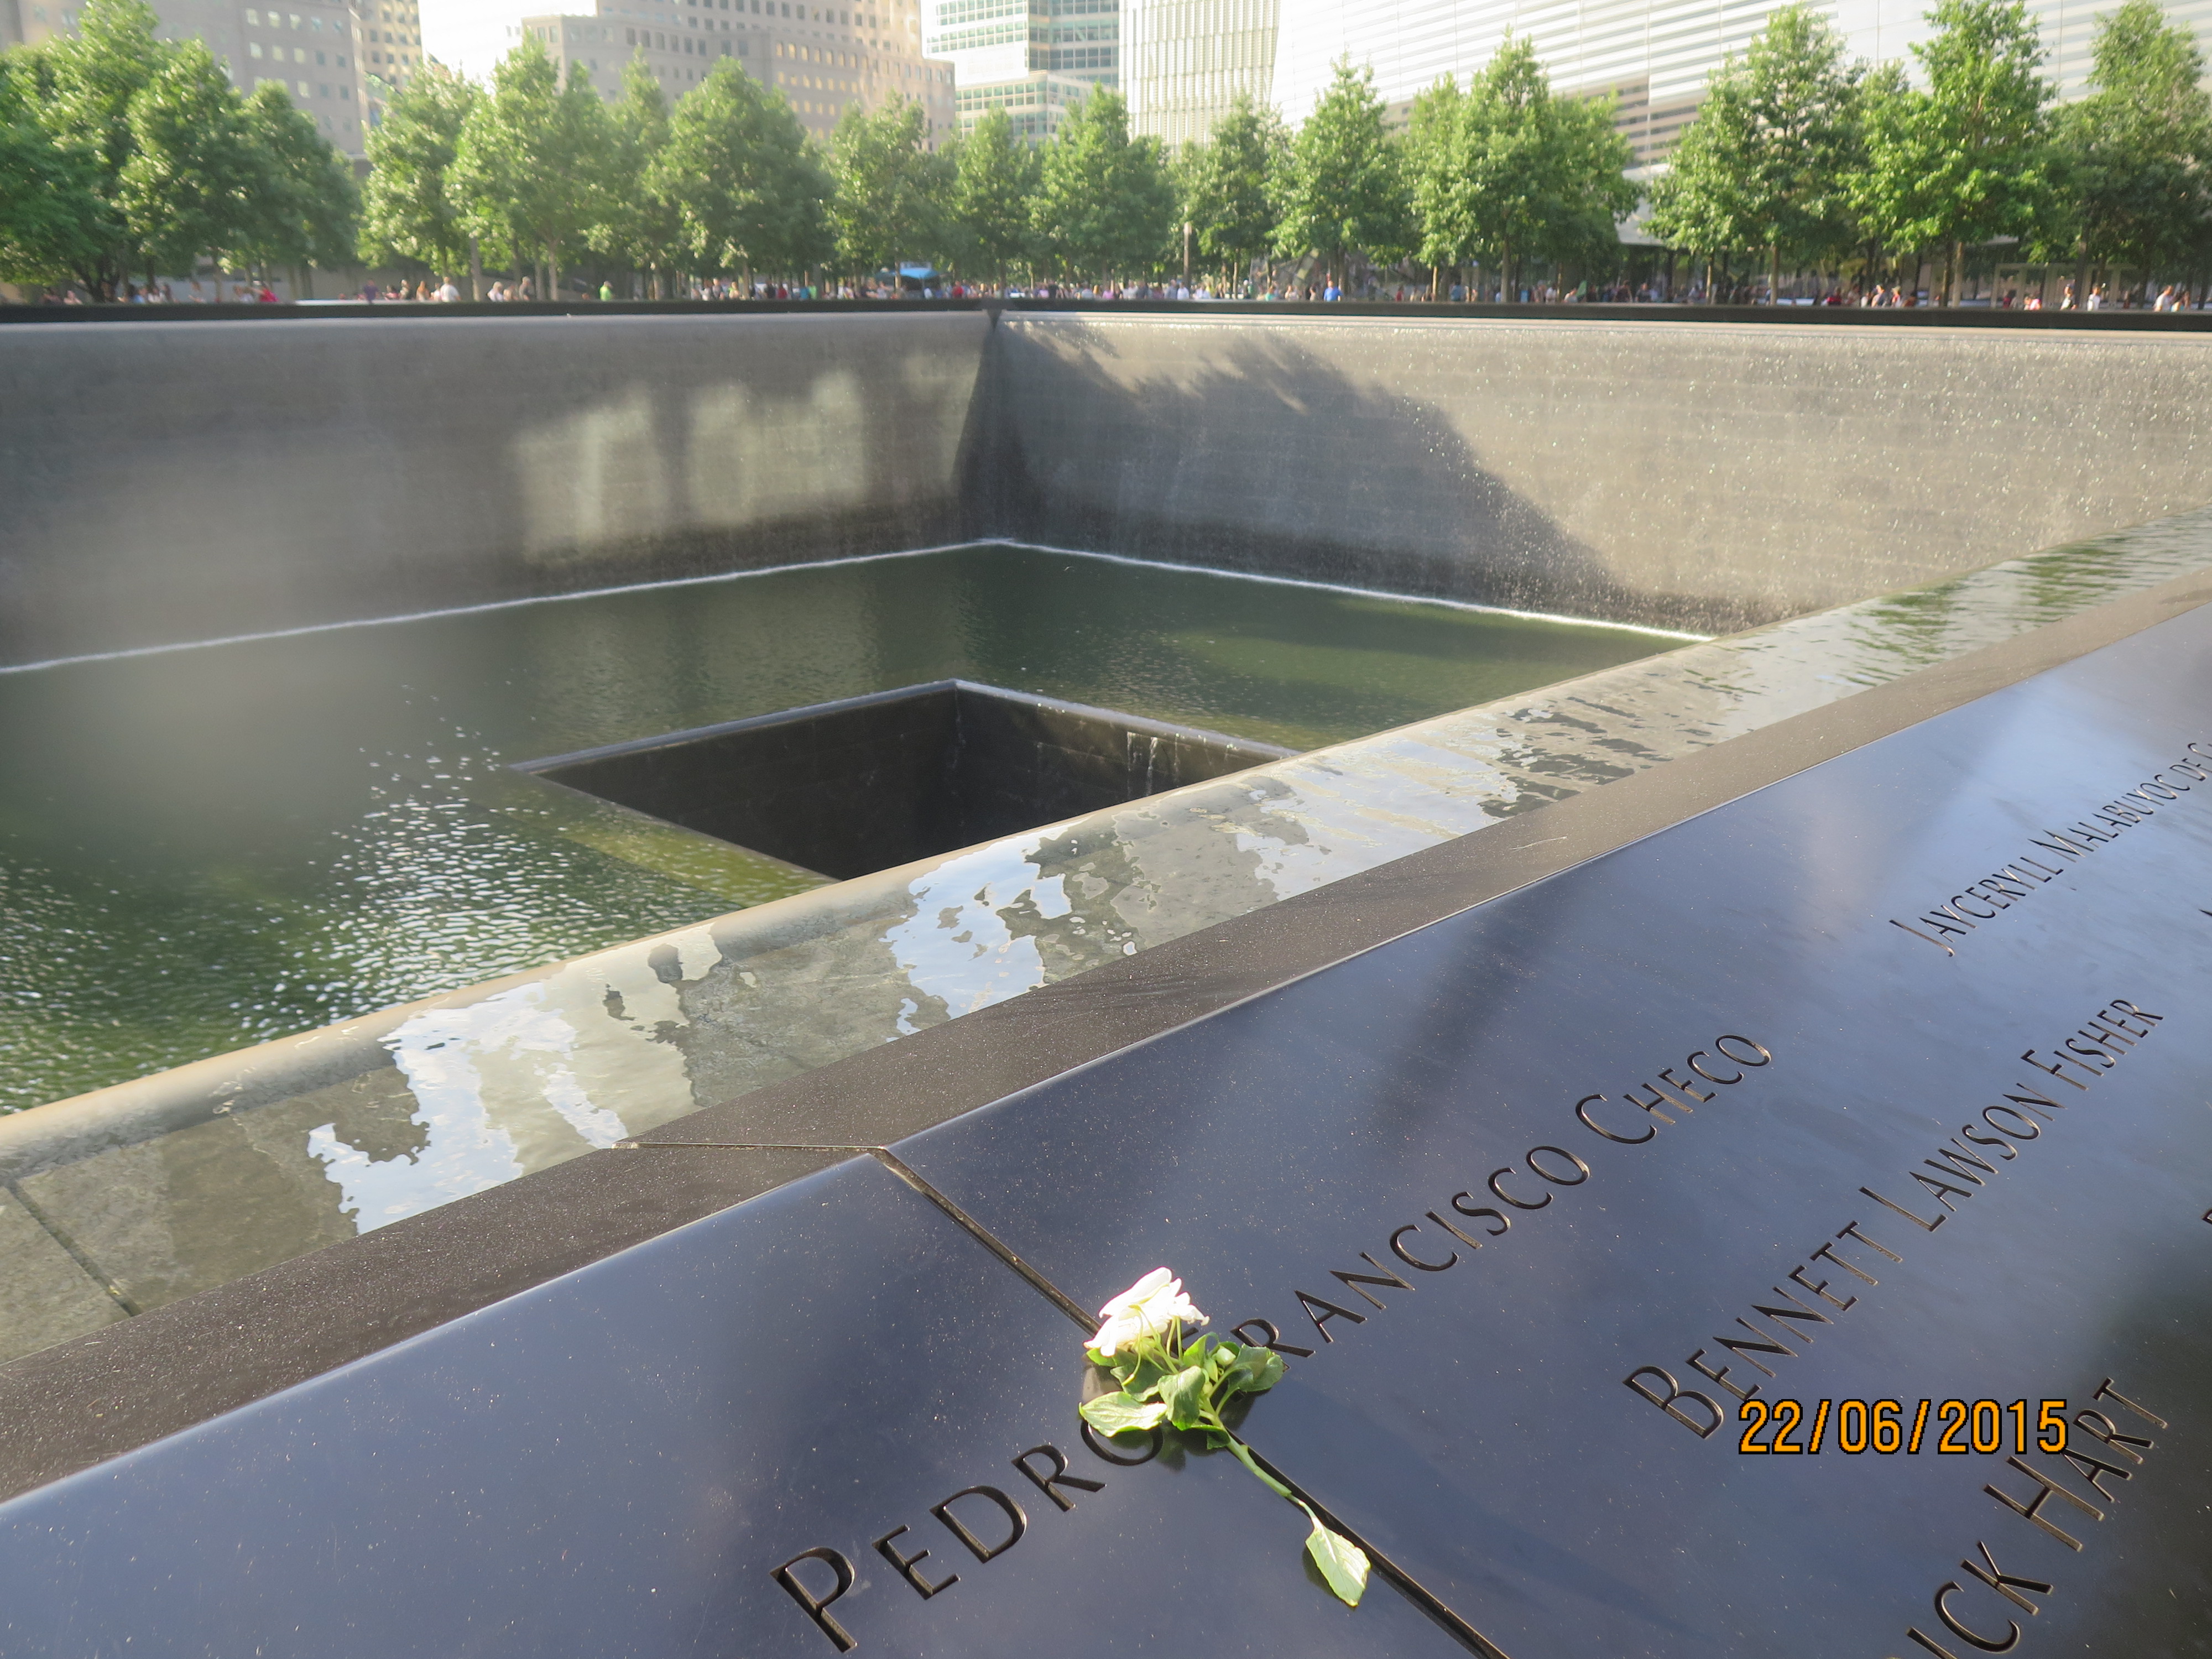 Hoa tưởng niệm và những cái tên anh hùng thuộc Sở chữa cháy New York ở lại mãi mãi Ground Zero nhắc nhớ về sự hy sinh trong thảm họa